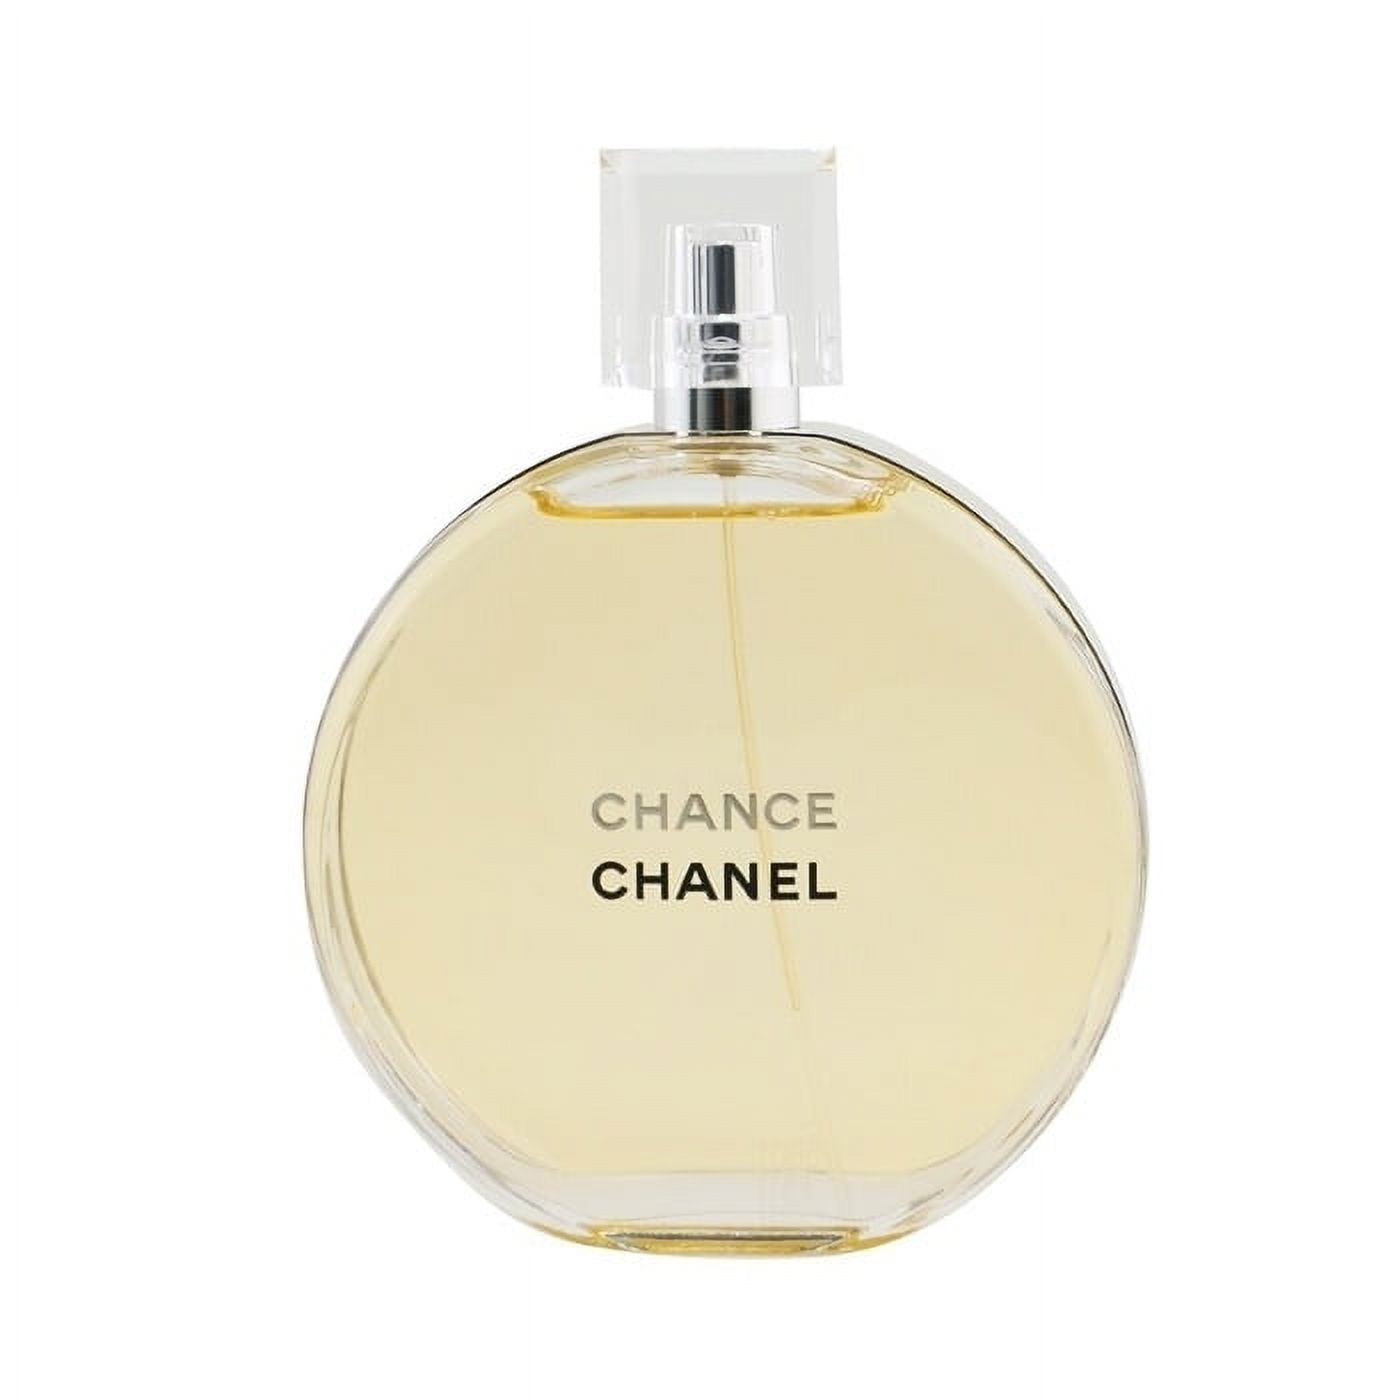 Chanel Chance Eau Tendre Eau de Toilette Perfume for Women, 3.4 Oz ...